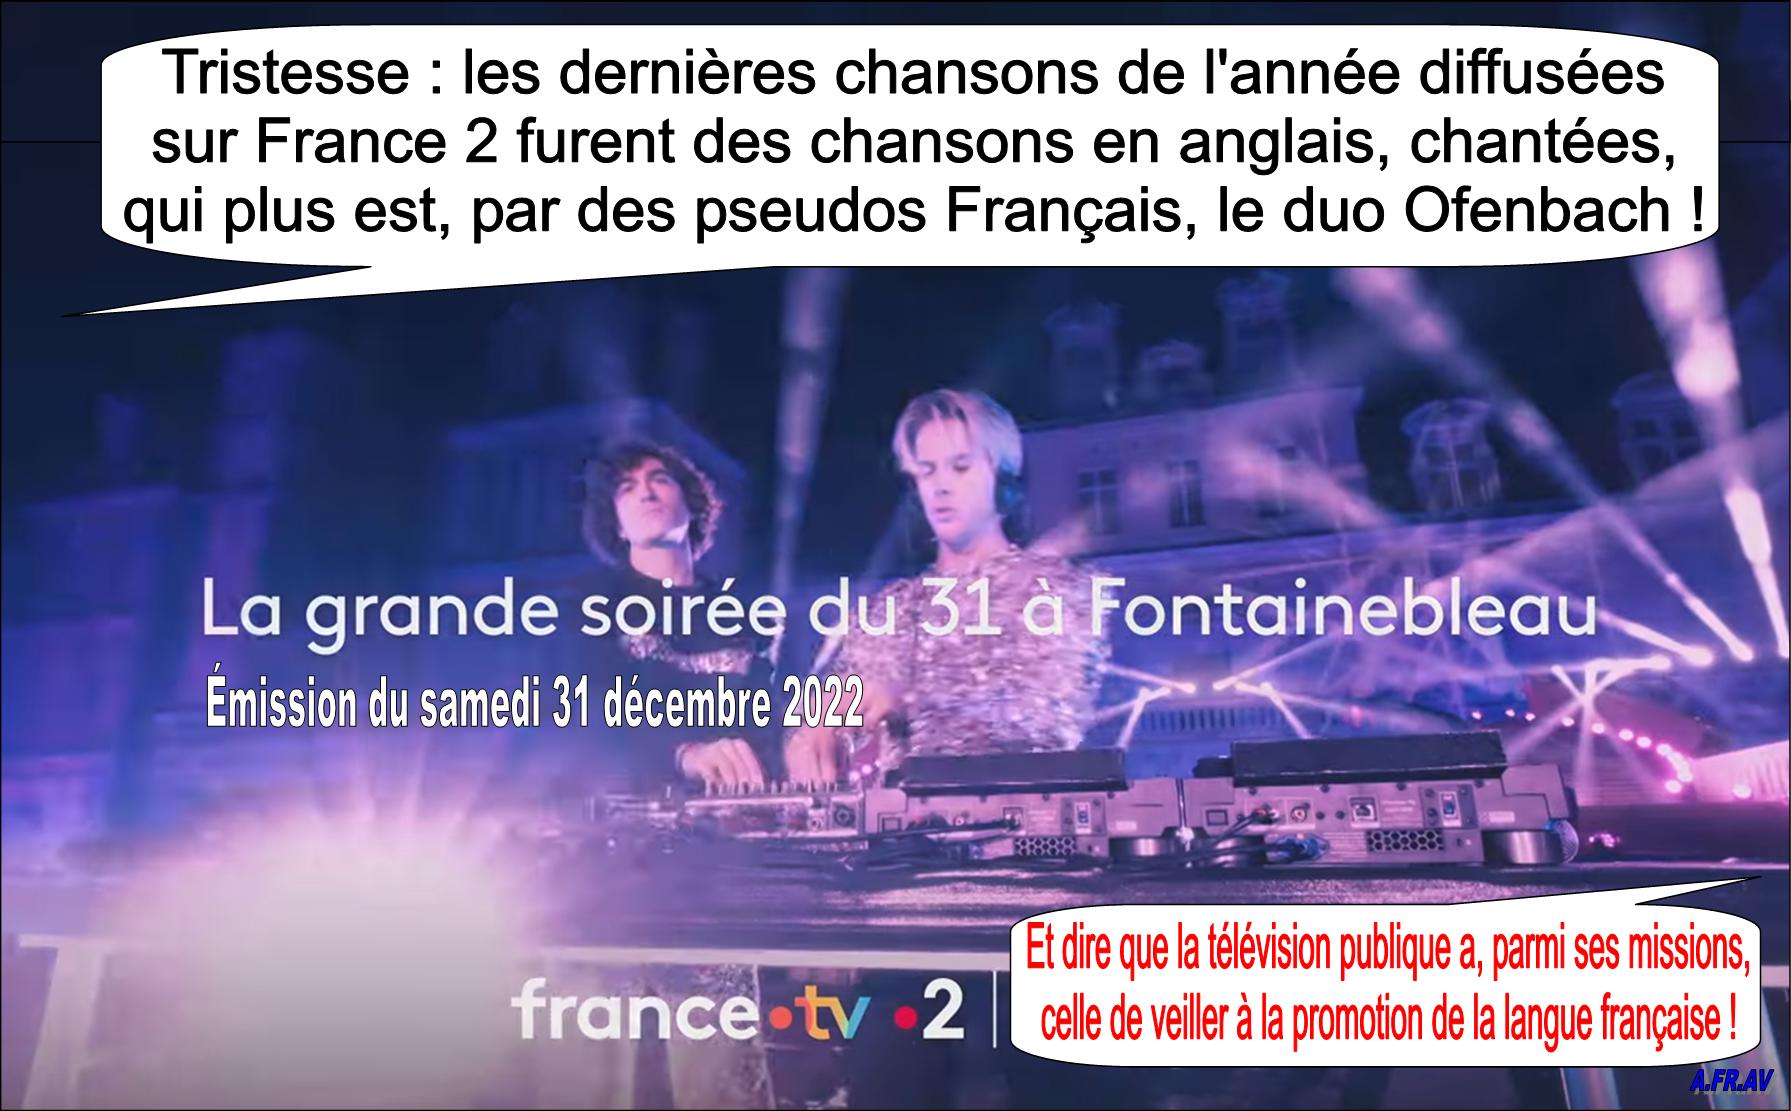 La Grande Soirée à Fontainebleau, Stéphane Bern, duo Ofenbach, langue française, France 2, France Télévisions.